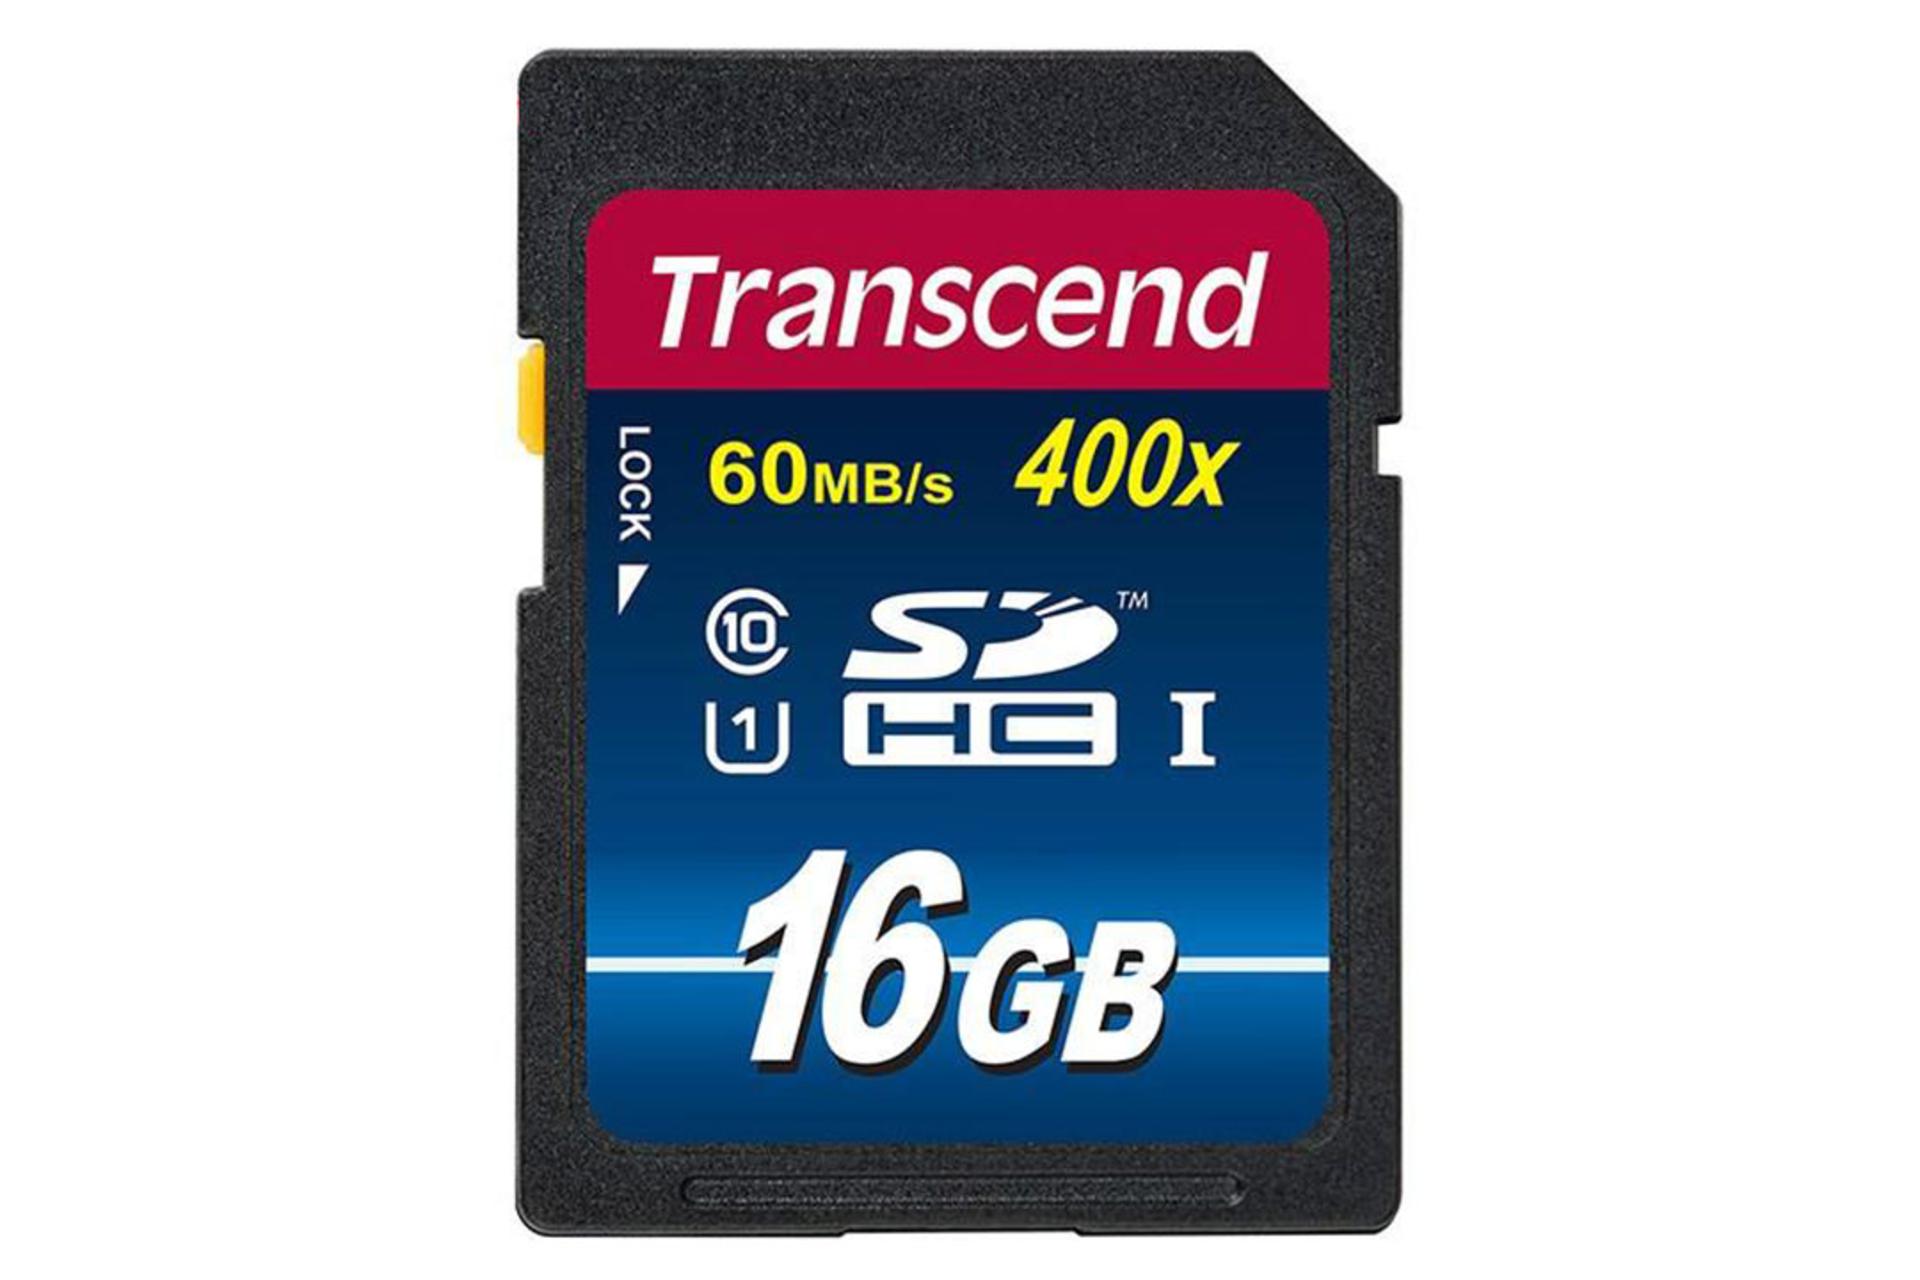 Transcend Premium SDHC Class 10 UHS-I U1 16GB